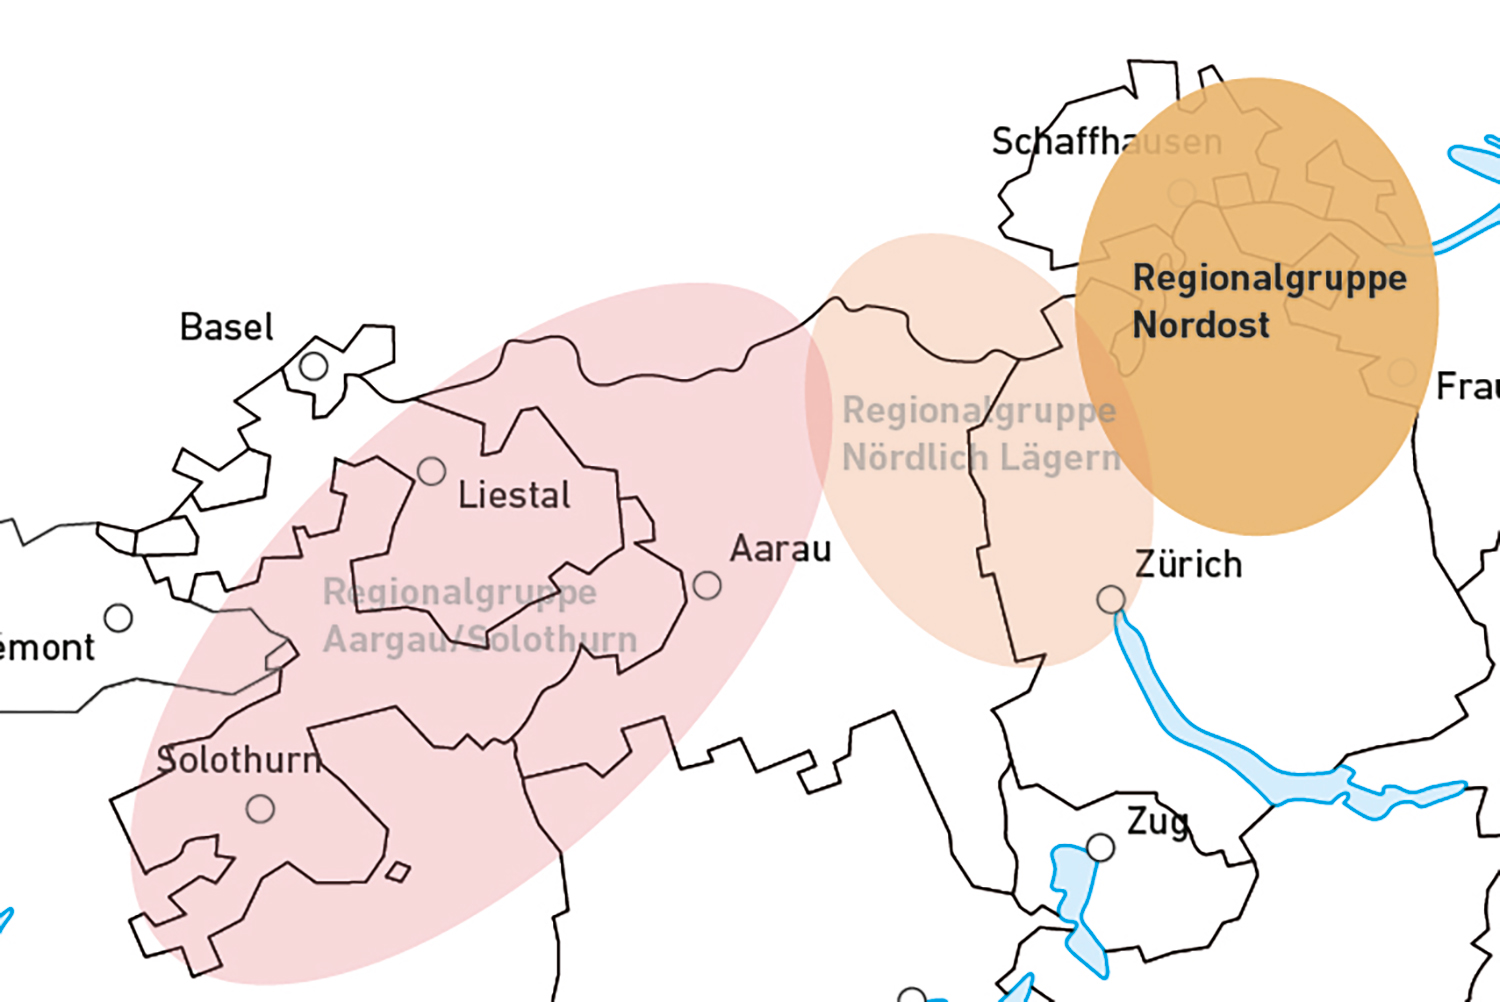 Regionalgruppe Nordost